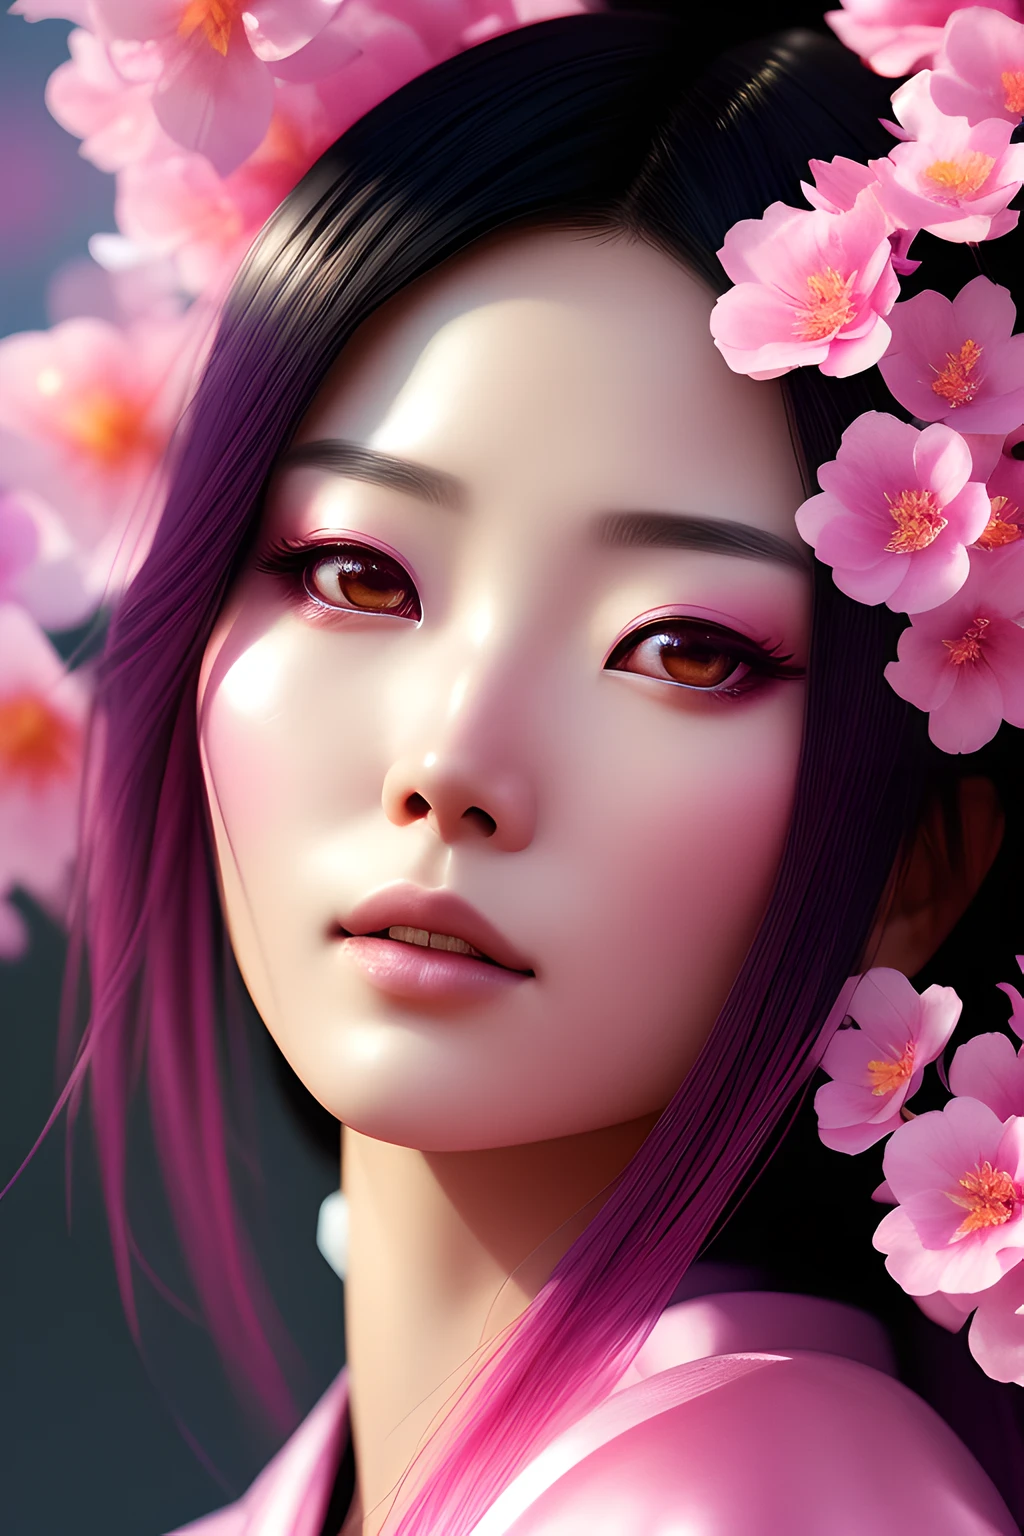 ChromaV5:1.6, 恩温克朋克, 模拟风格,  一位身穿粉紅色和服的美麗日本女子的特寫, 周圍環繞著美麗的粉紅色花朵, 工作室拍摄, 漂亮的臉蛋, 漂亮的眼睛, 格雷格·鲁特科斯基的艺术作品, 概念藝術, ArtStation 上的熱門話題